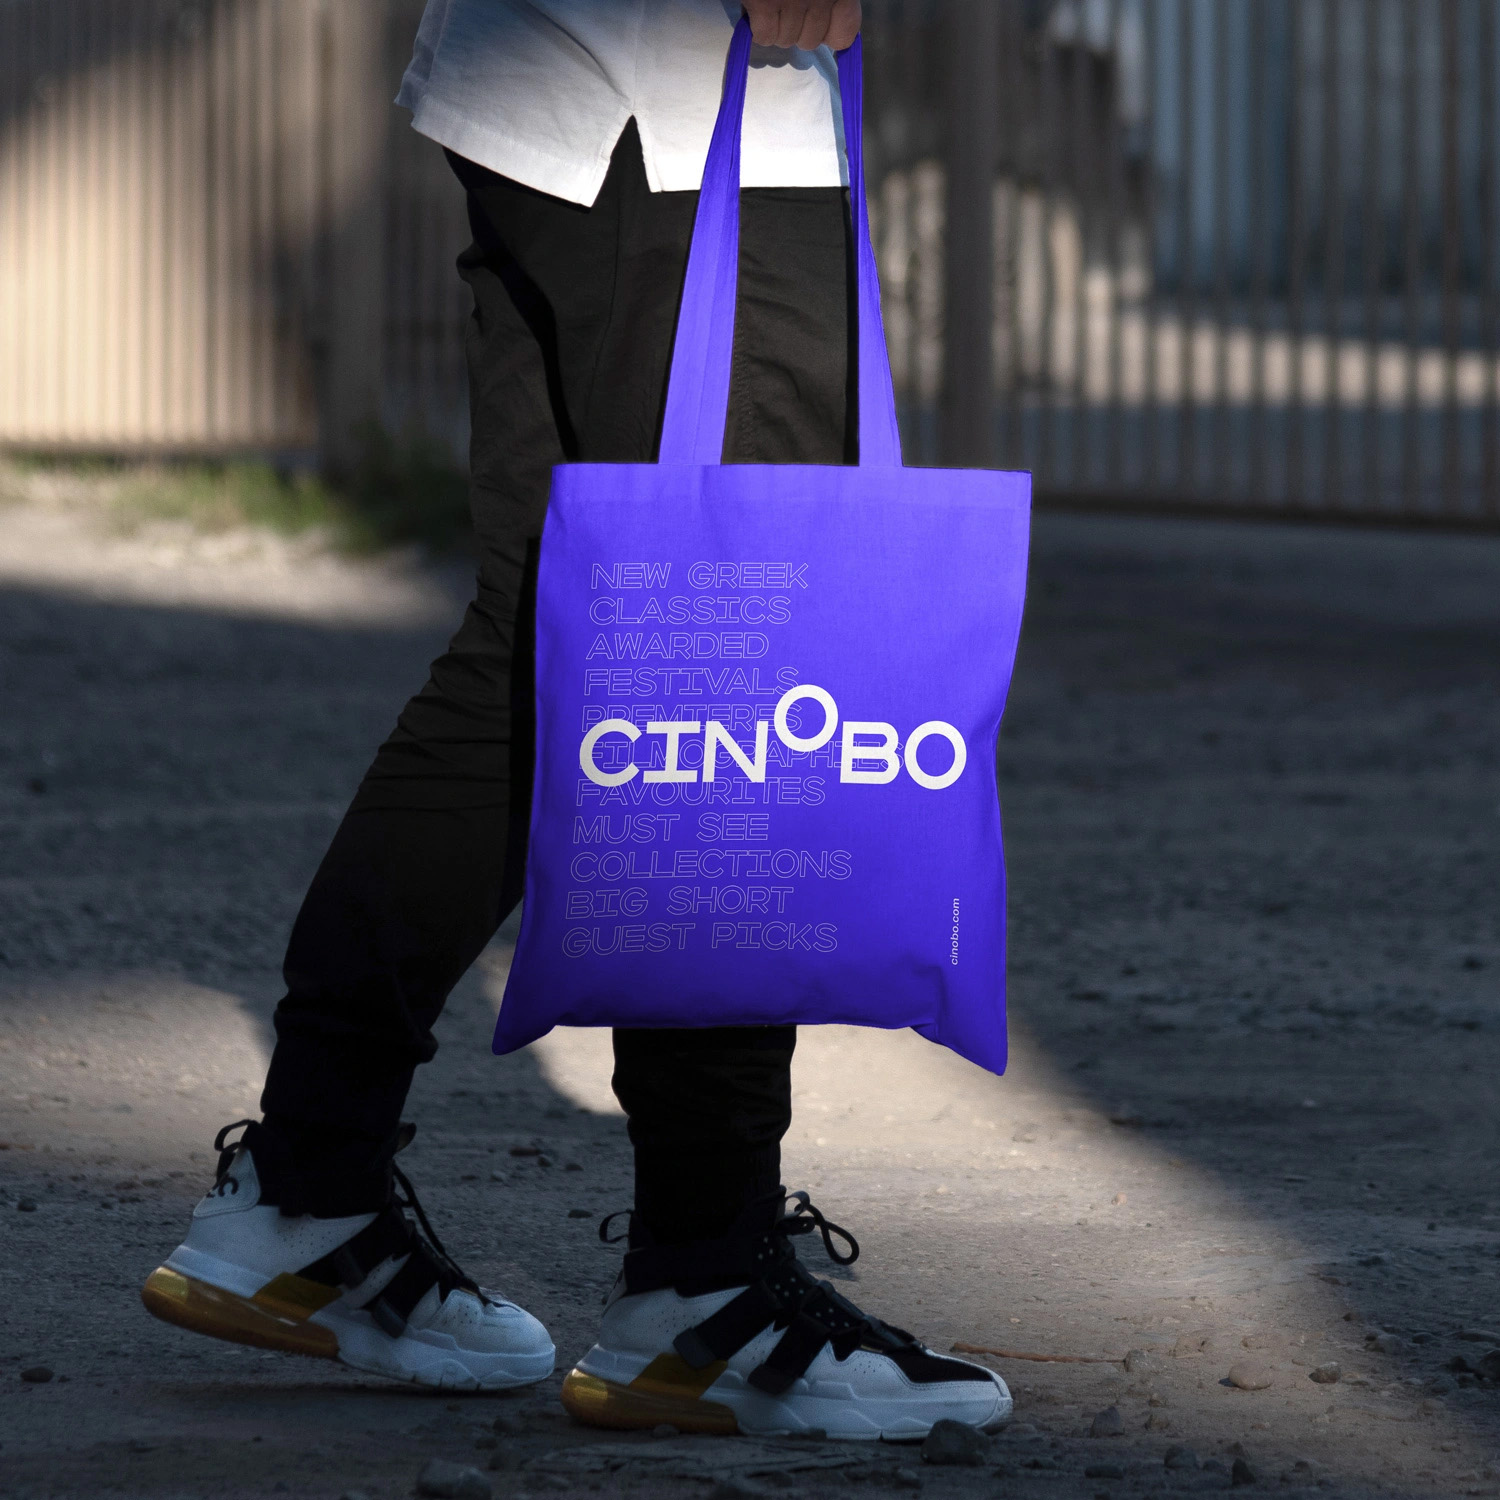 流媒体平台Cinobo品牌和网页设计